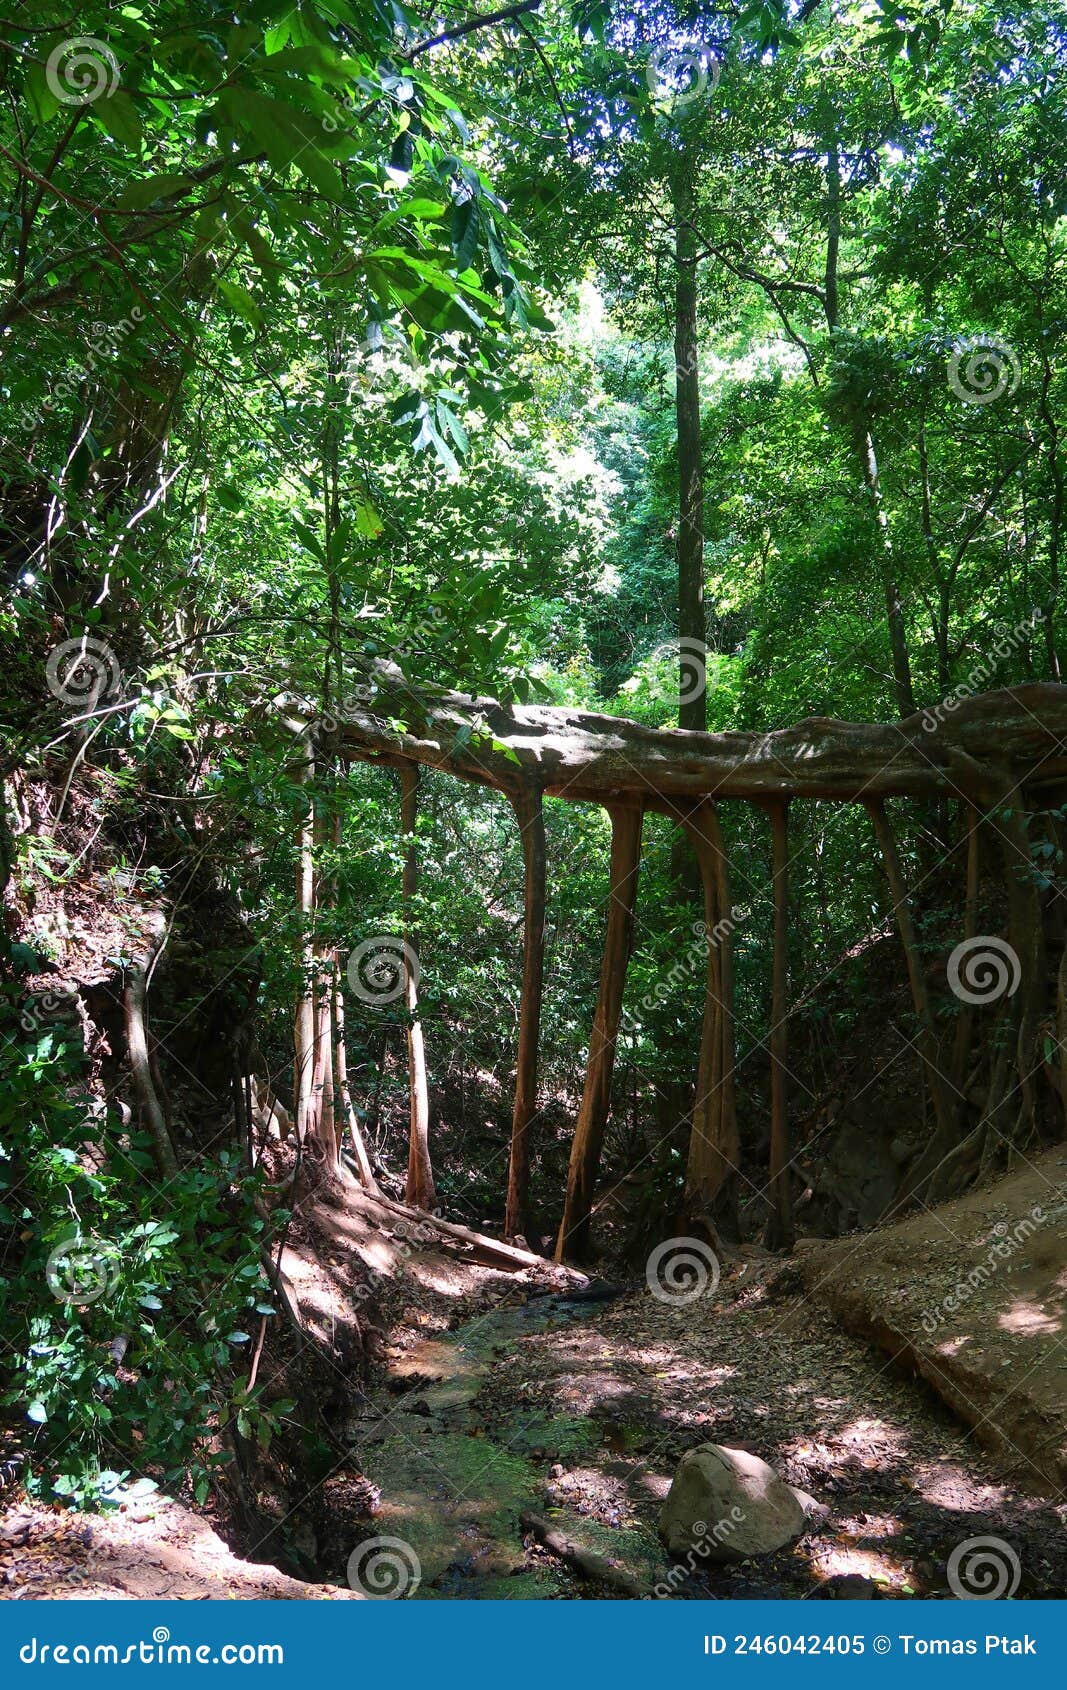 natural roots bridge from ficus la raiz in monteverde, costa rica